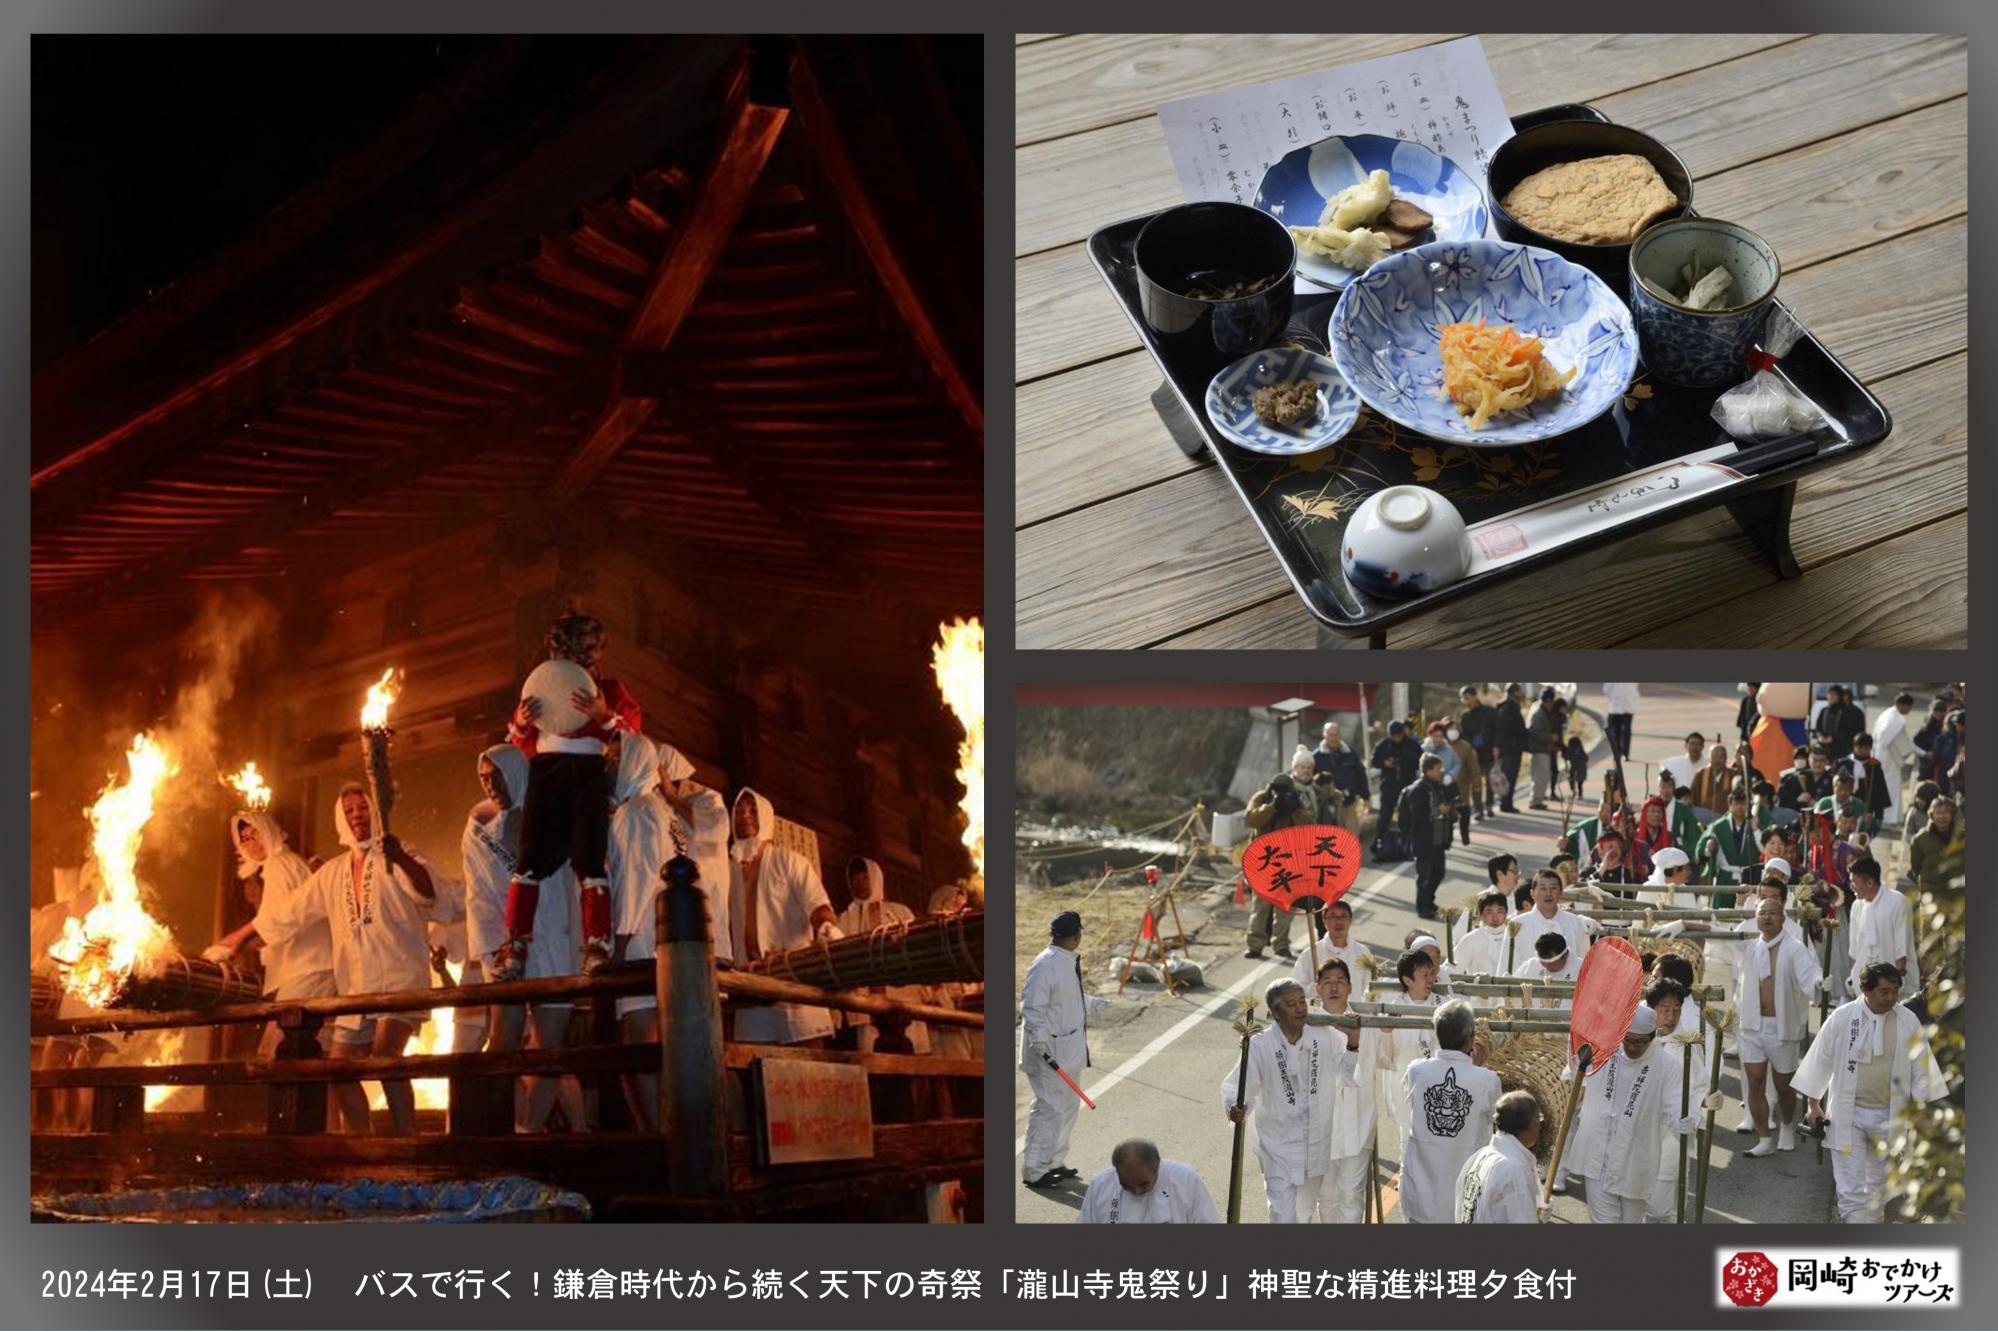 【岡崎おでかけツアーズ】「バスで行く！鎌倉時代から続く天下の奇祭「瀧山寺鬼祭り」伝統の精進料理付き」お申し込み締切間近です！